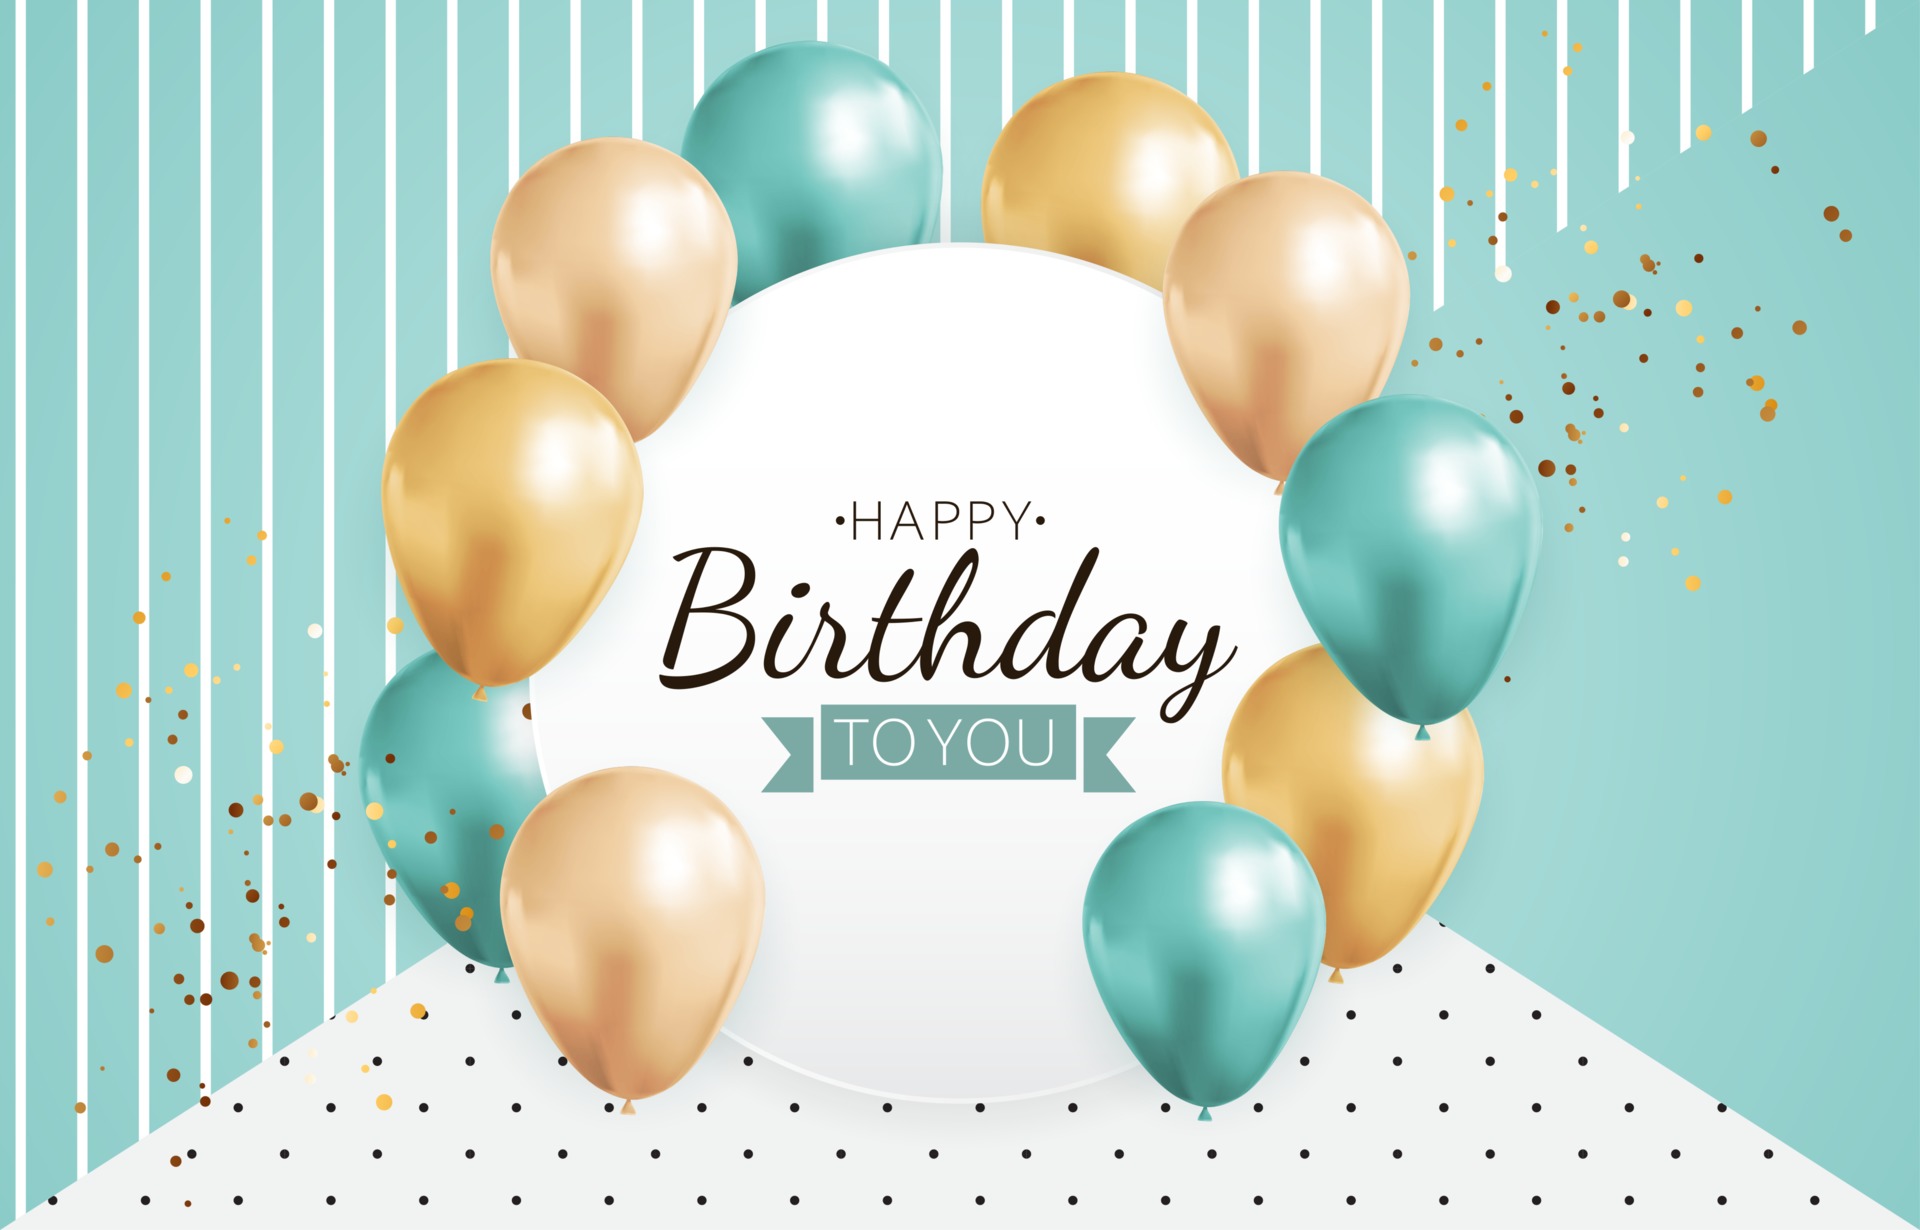 Hãy nhanh tay tải đồ họa thiết kế thẻ sinh nhật vector miễn phí để tặng người thân yêu của bạn những lời chúc tốt đẹp nhất vào ngày sinh nhật của họ.